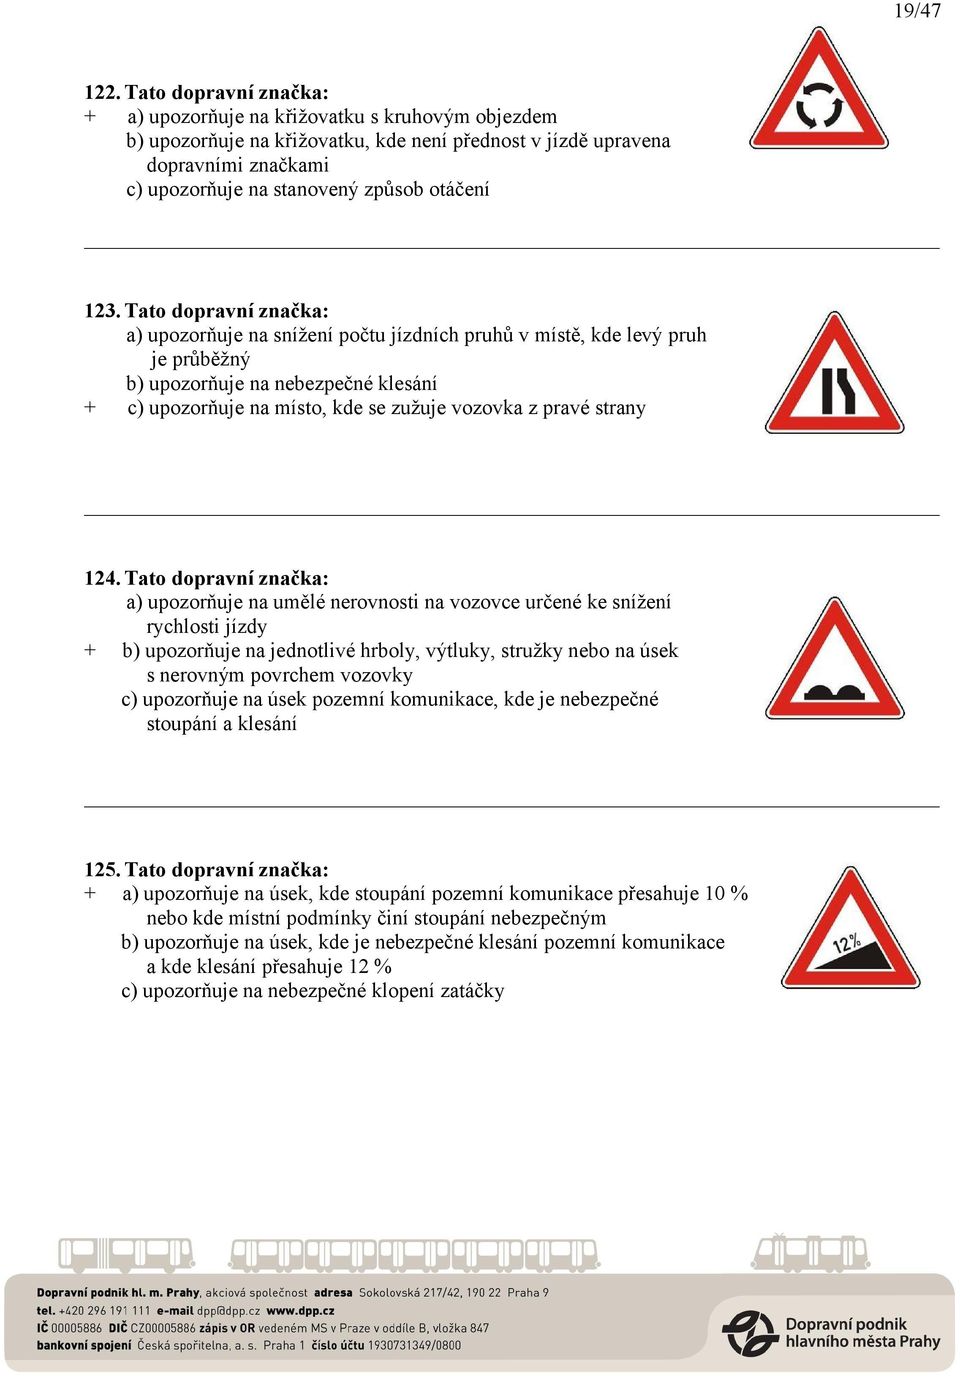 123. Tato dopravní značka: a) upozorňuje na snížení počtu jízdních pruhů v místě, kde levý pruh je průběžný b) upozorňuje na nebezpečné klesání + c) upozorňuje na místo, kde se zužuje vozovka z pravé